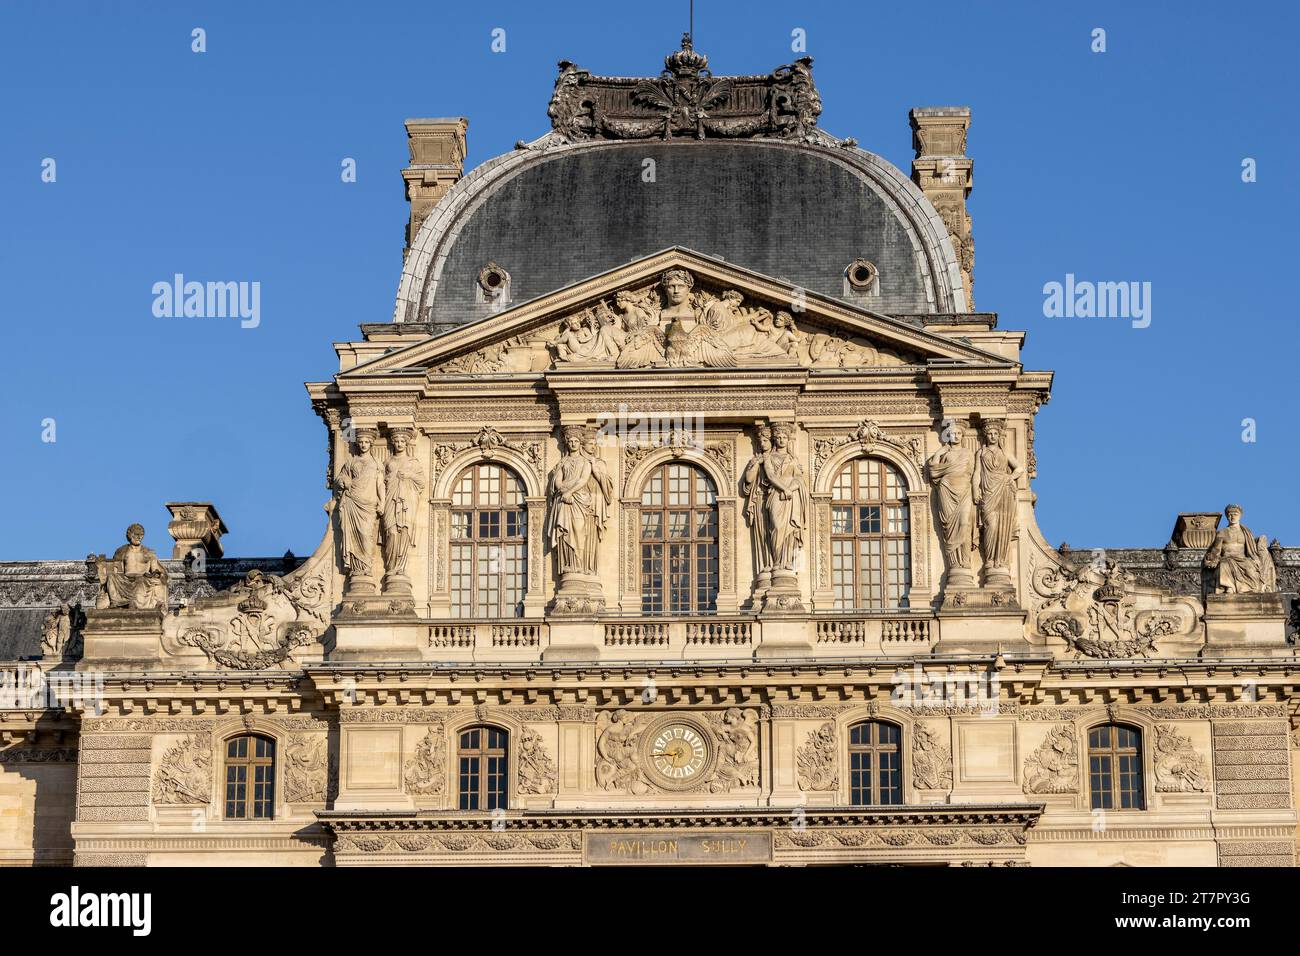 Détail de l'opulent bâtiment du Musée du Louvre avec sculptures sur le dessus, Paris, Ile-de-France, France Banque D'Images